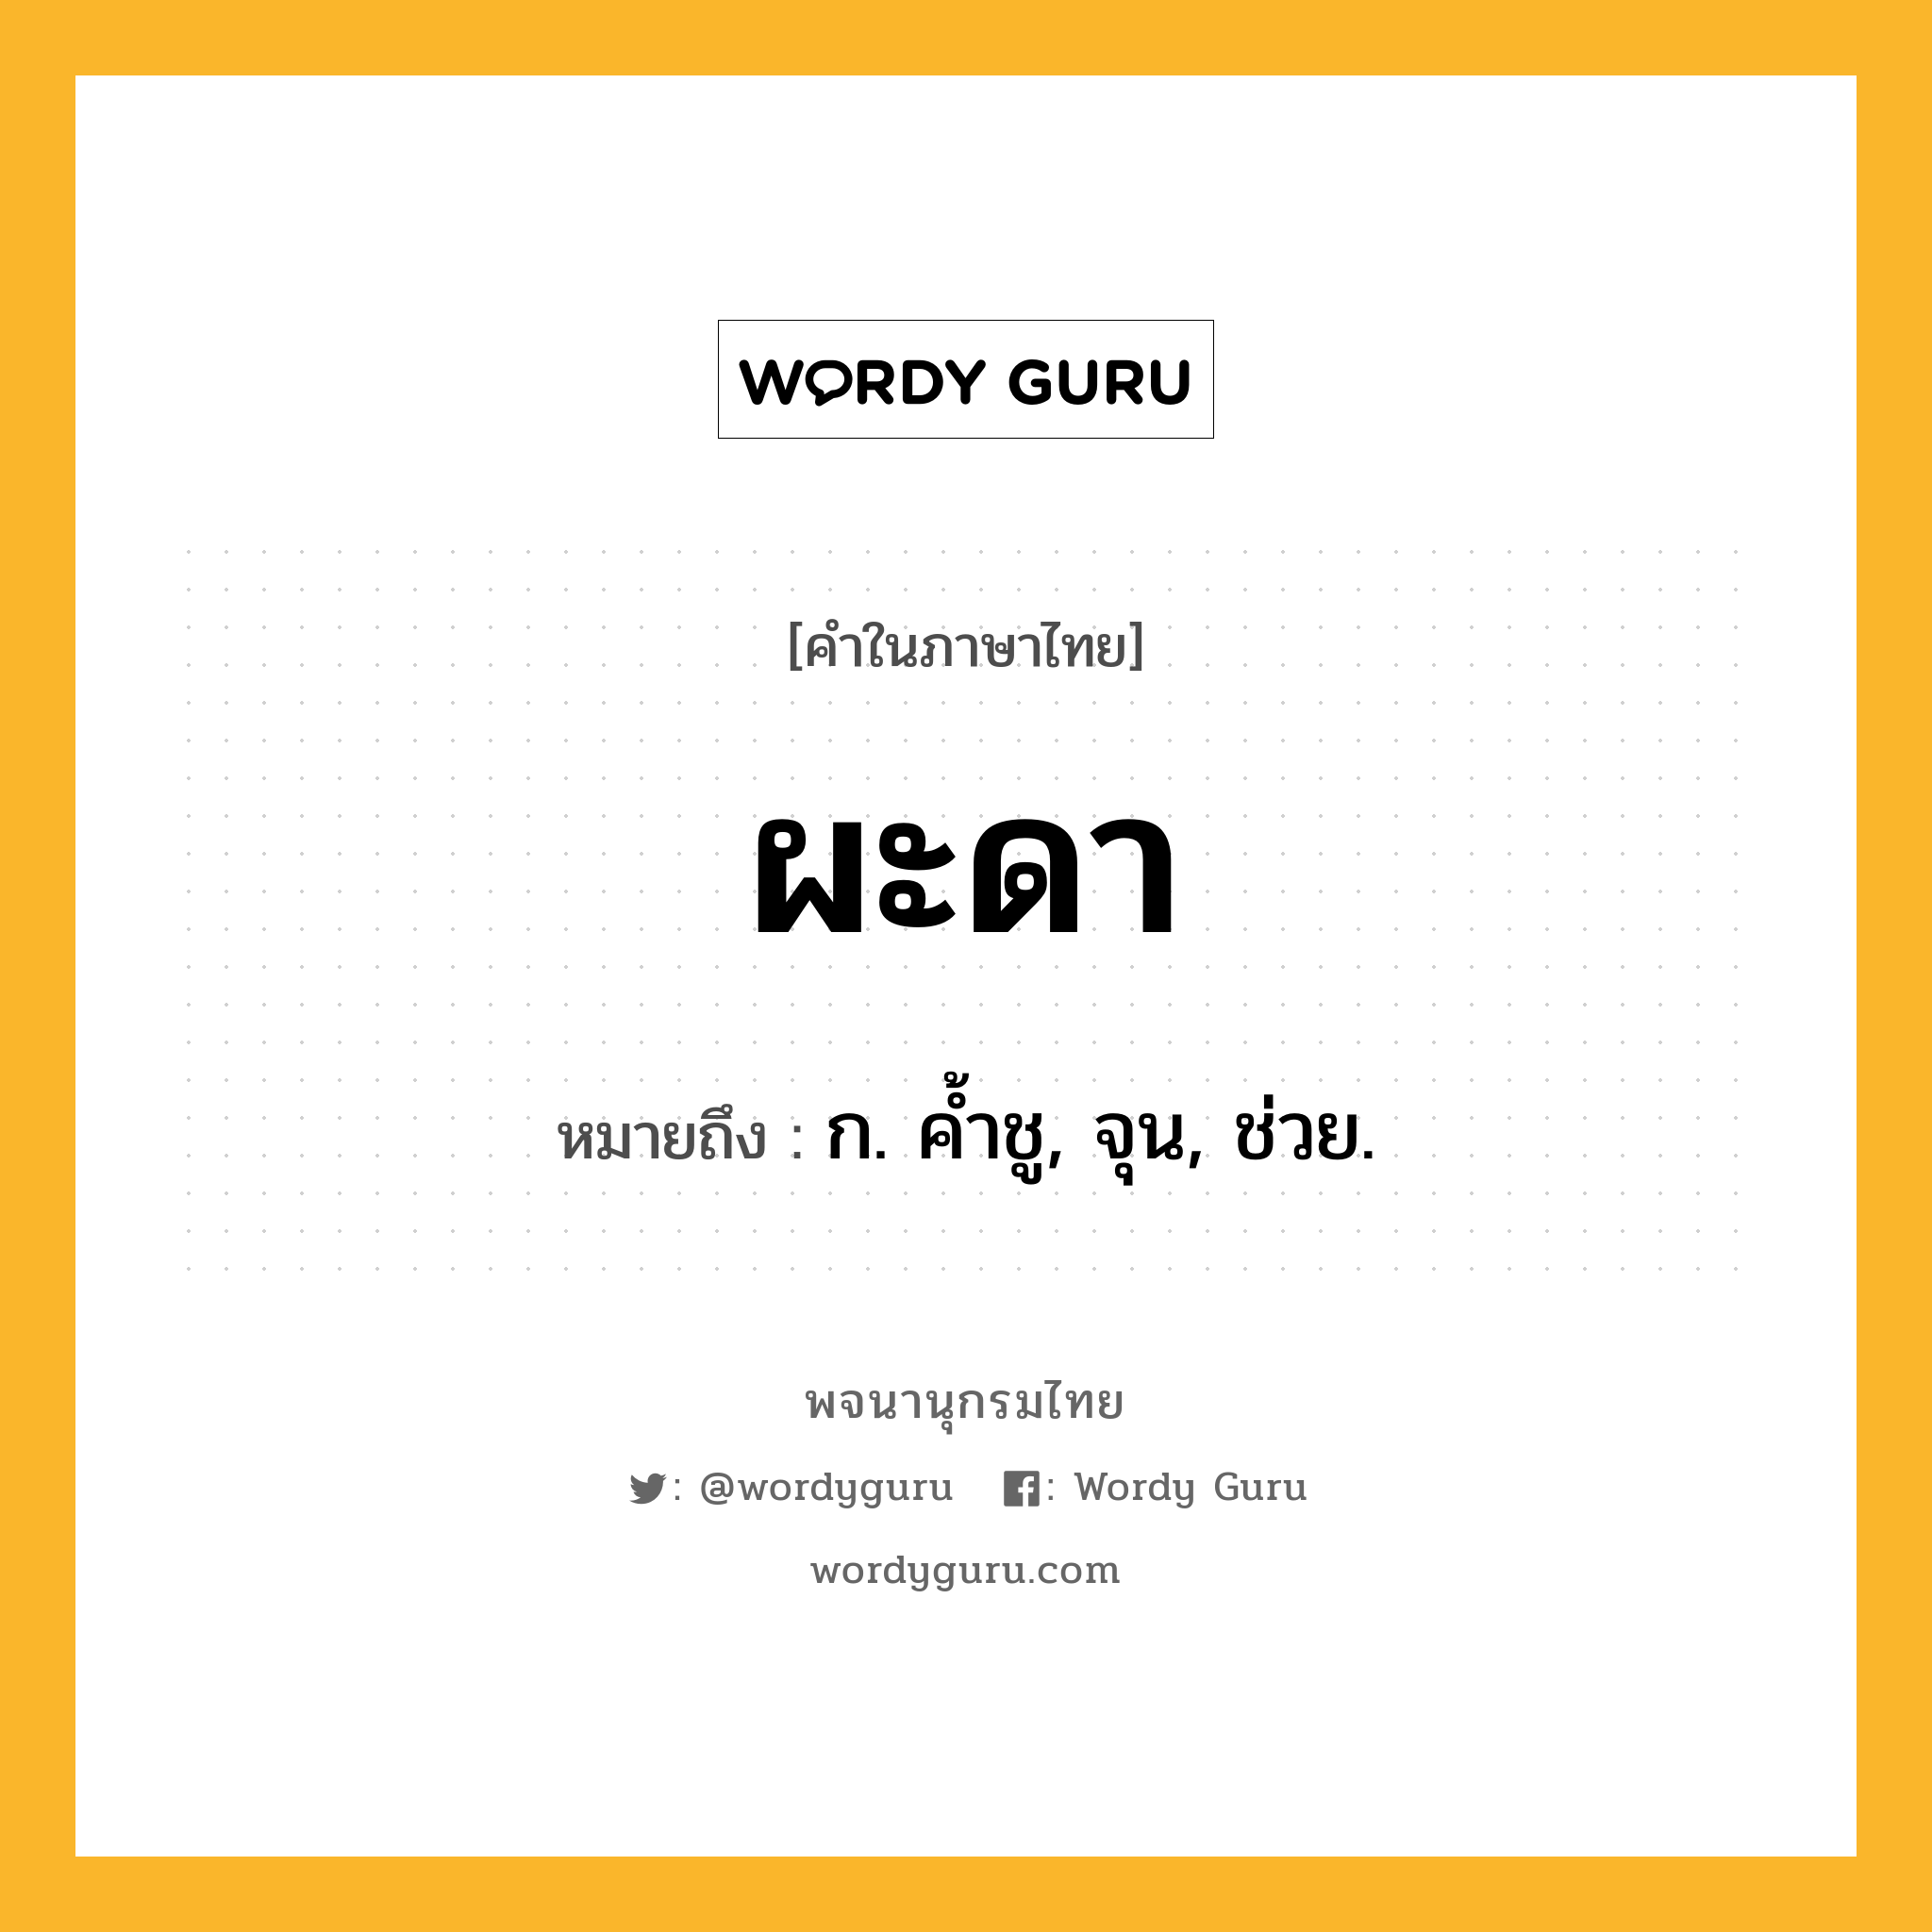 ผะดา หมายถึงอะไร?, คำในภาษาไทย ผะดา หมายถึง ก. คํ้าชู, จุน, ช่วย.